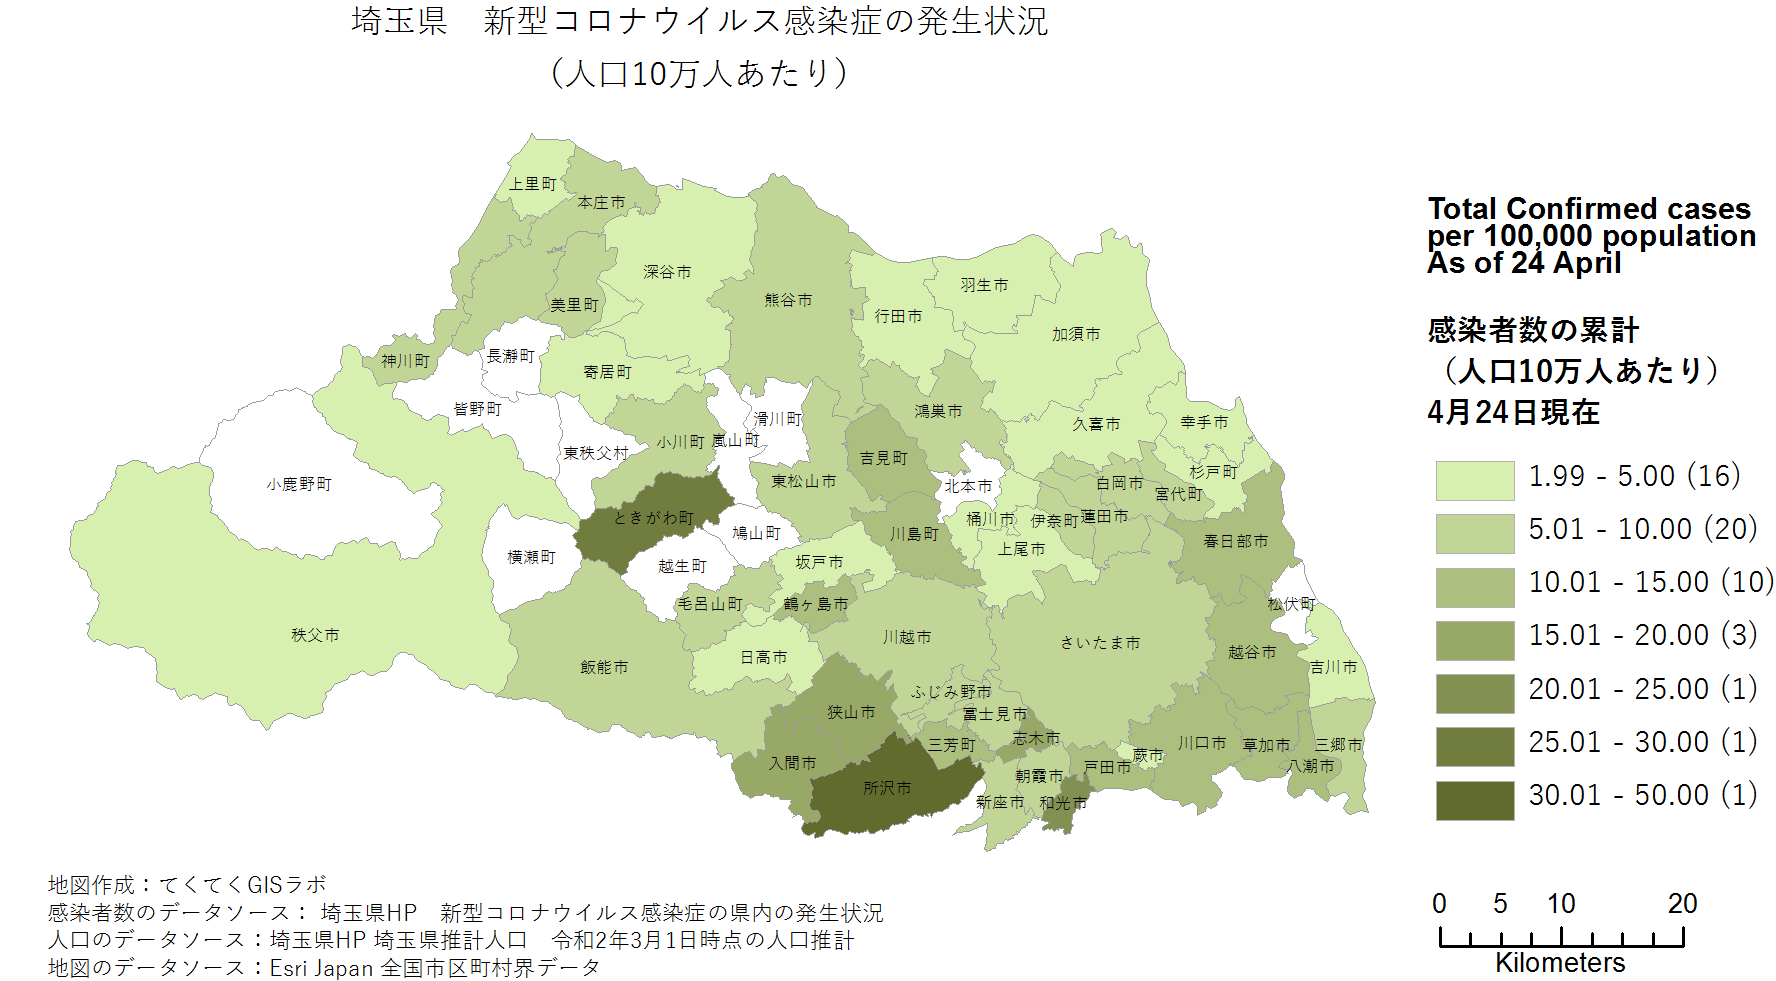 Number of cases in Saitama